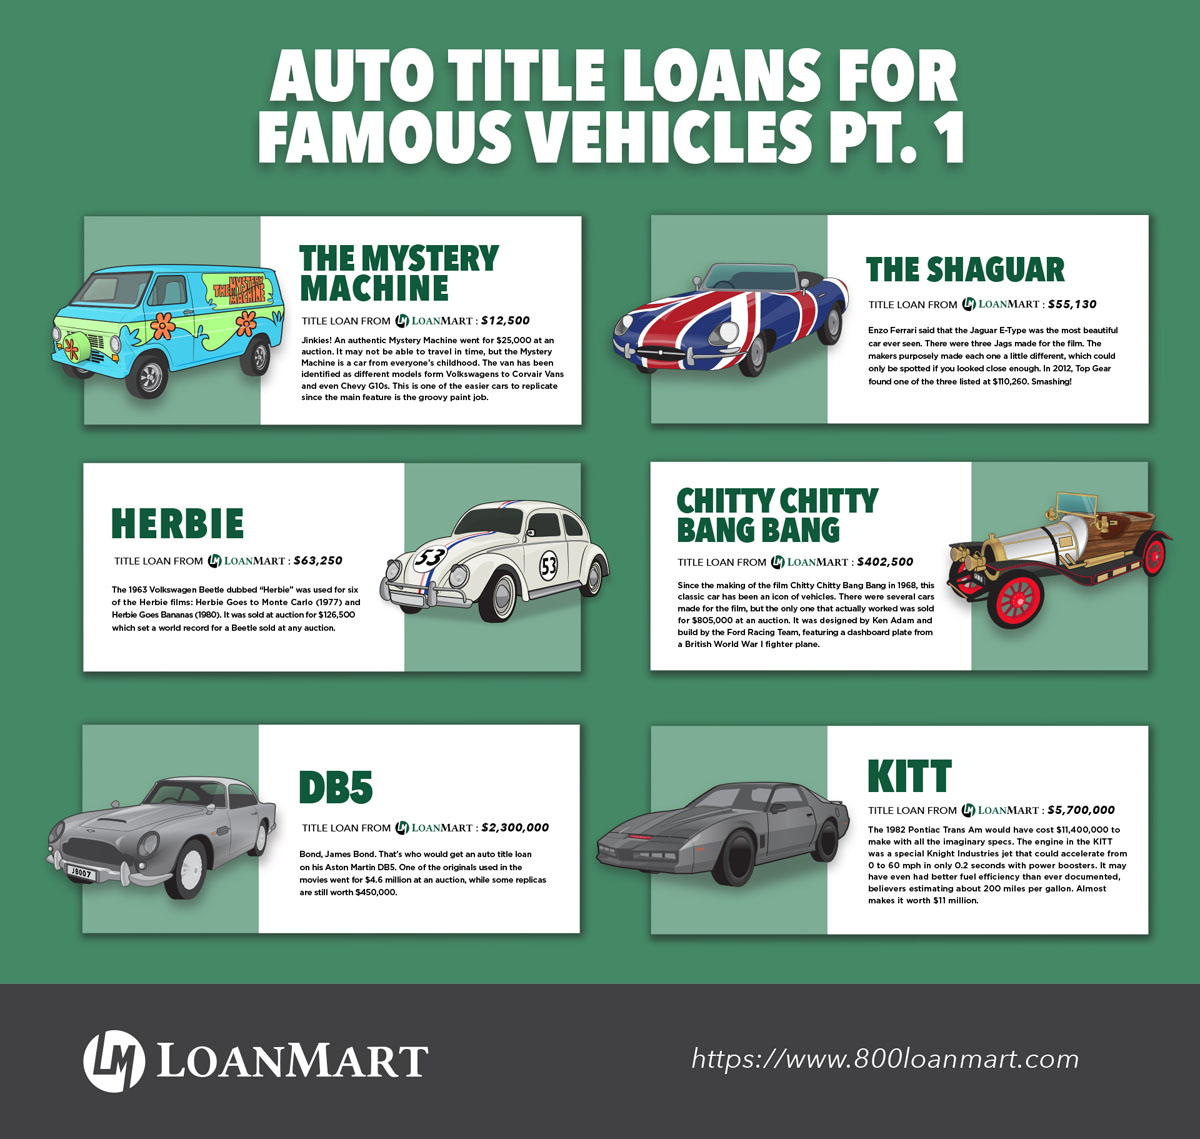 Auto Title Loans For Famous Vehicles: Part 1